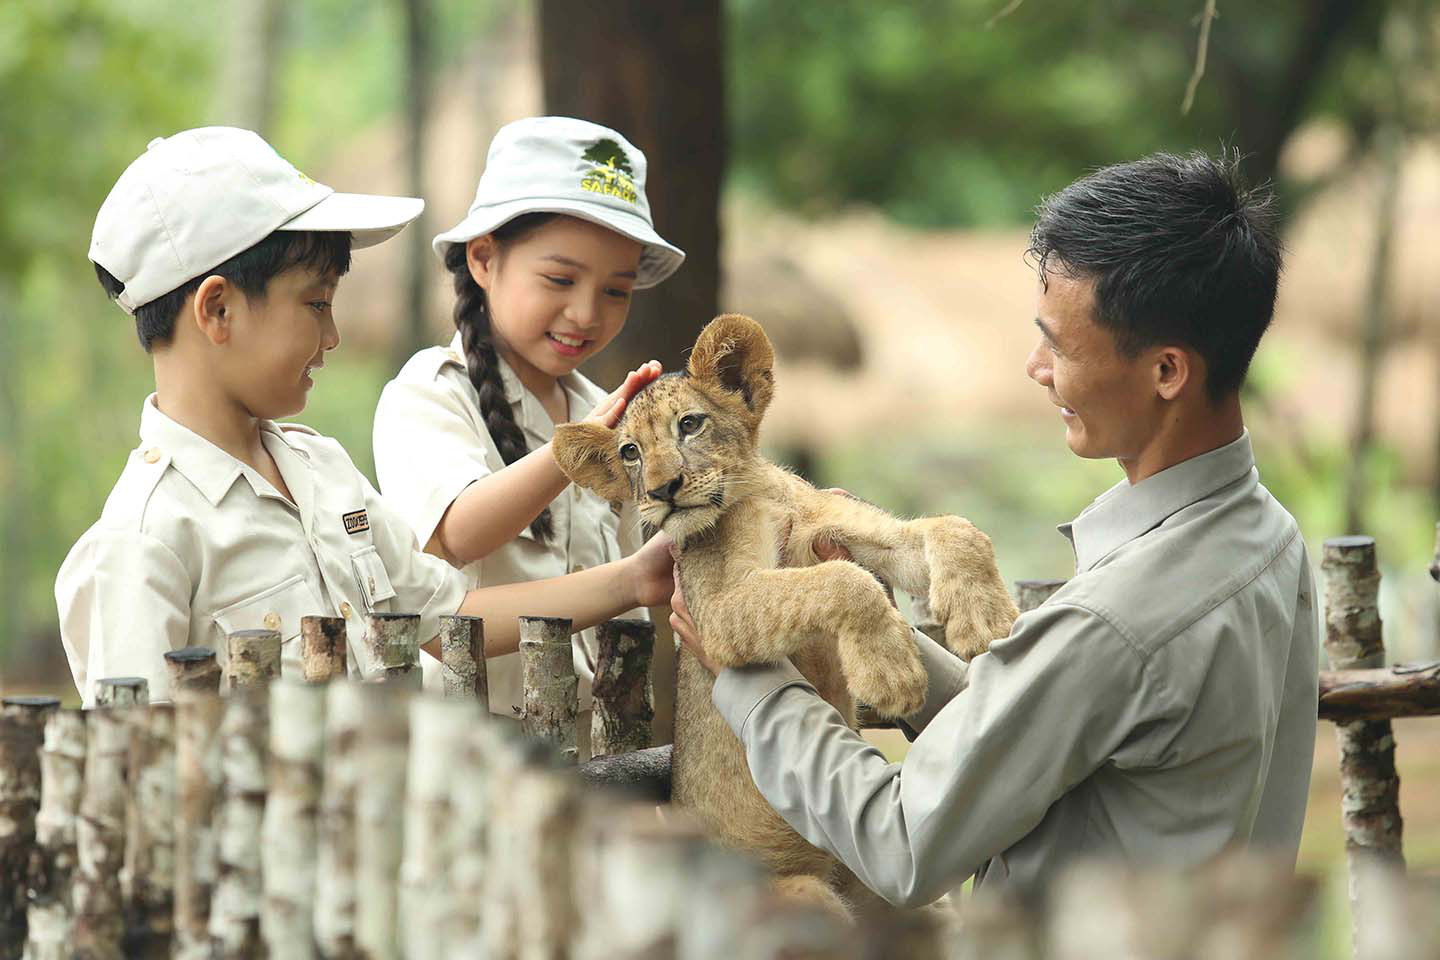 Vườn thú bán hoang dã Phú Quốc: Khám phá sự hoang dã tuyệt vời tại Vườn thú bán hoang dã Phú Quốc! Vườn thú này chứa đầy những loài động vật hoang dã đẹp và ngoạn mục nhất trong vùng. Hãy xem qua những hình ảnh để thấy sự tuyệt vời của những con vật này.